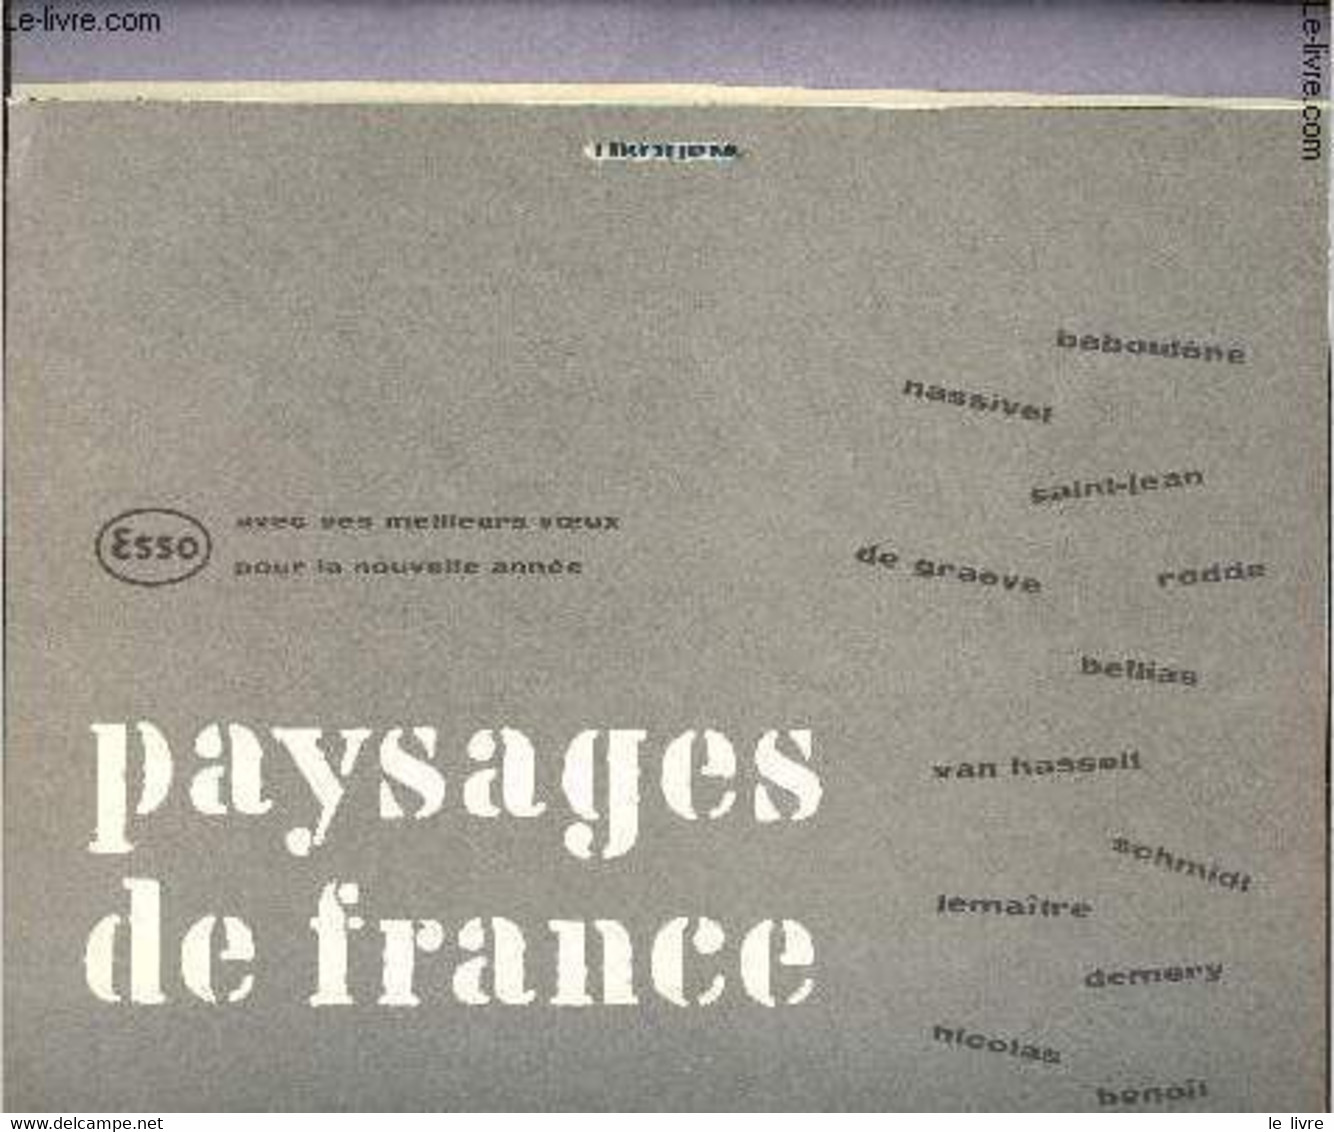 Calendrier Esso Service Du Libournais - Paysages De France - 1959 - Esso Service Du Libournais - 1959 - Agenda & Kalender